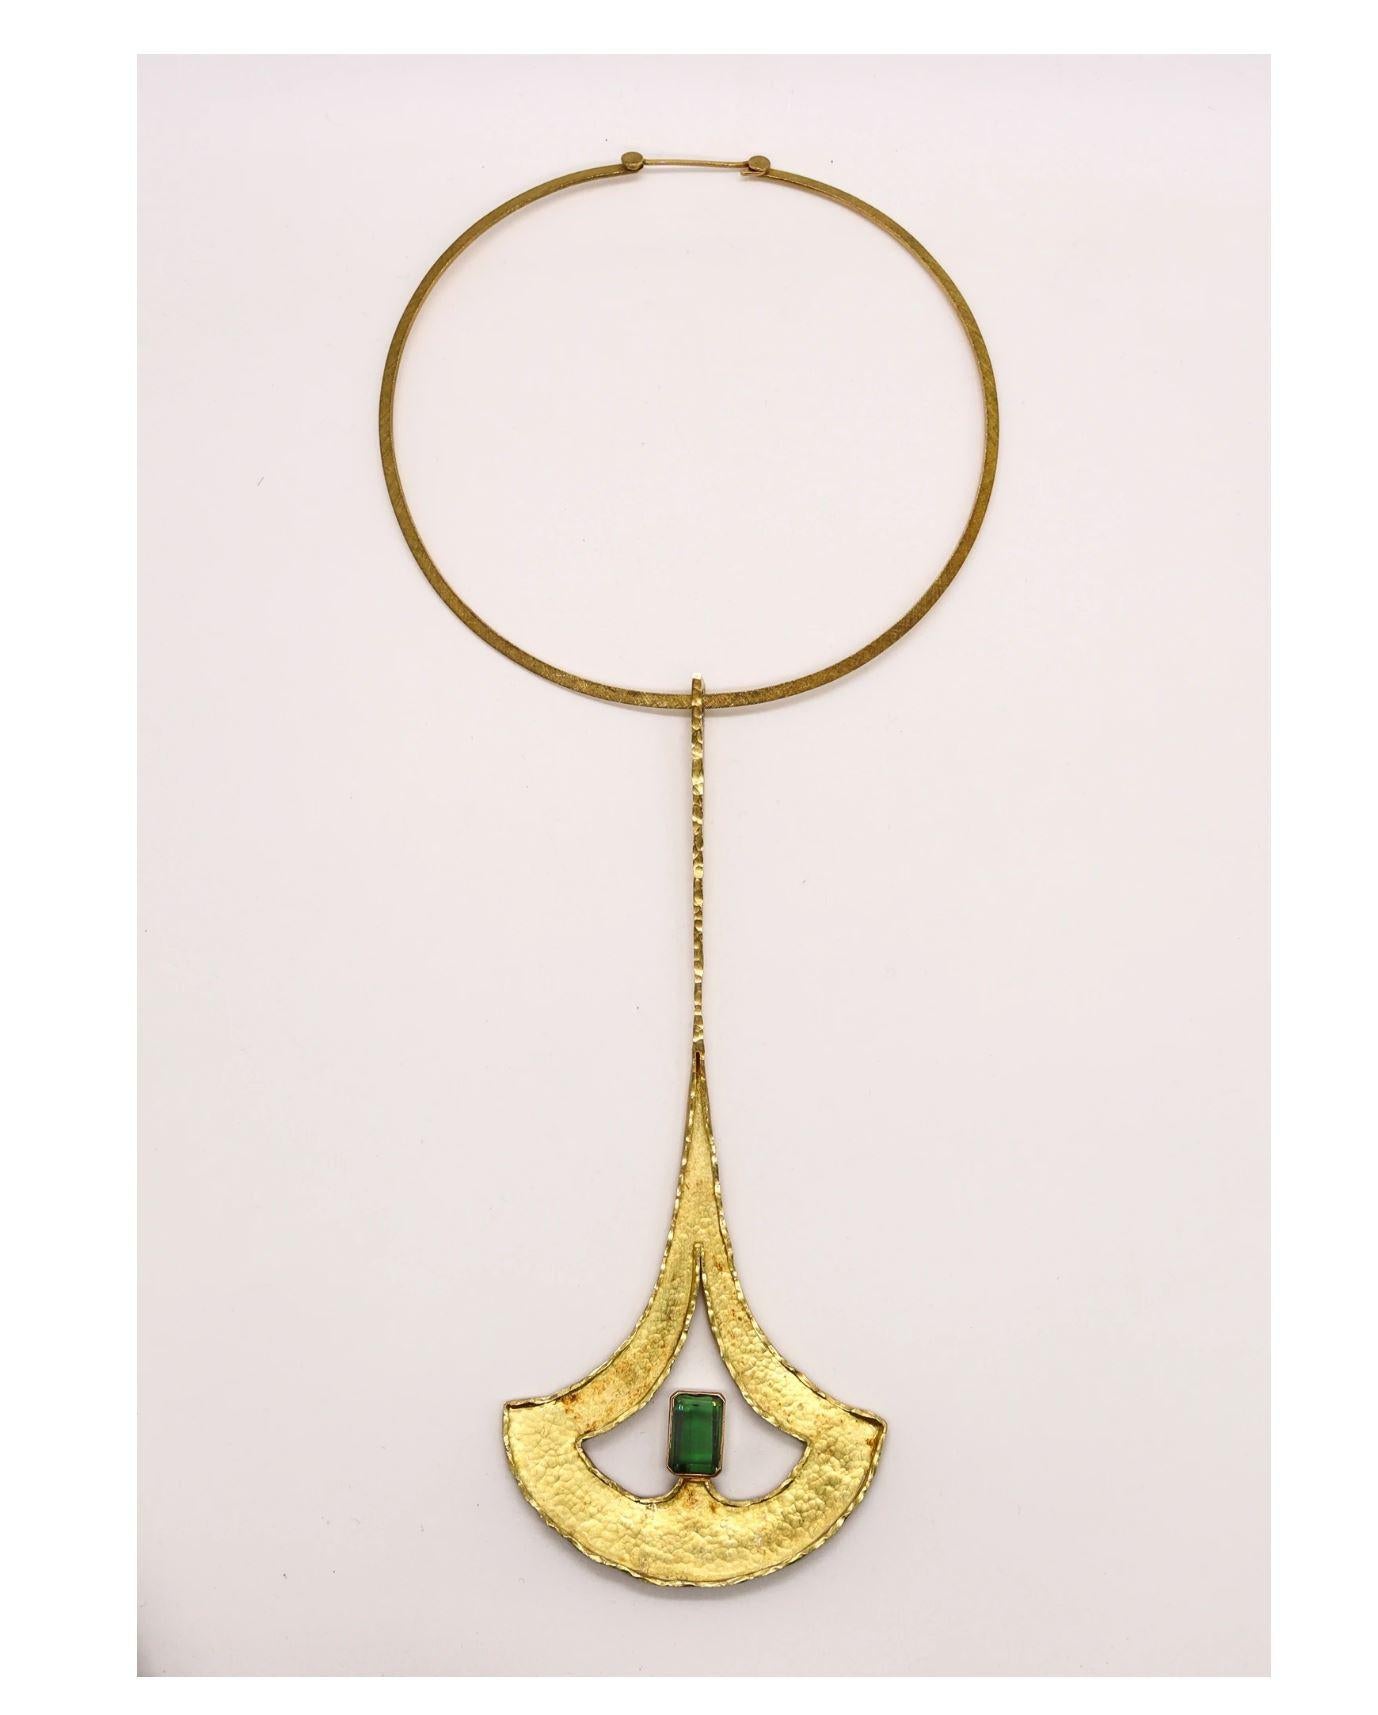 Emerald Cut Guayasamin Modernist Geometric Sculptural Necklace 18Kt Gold & Green Tourmaline